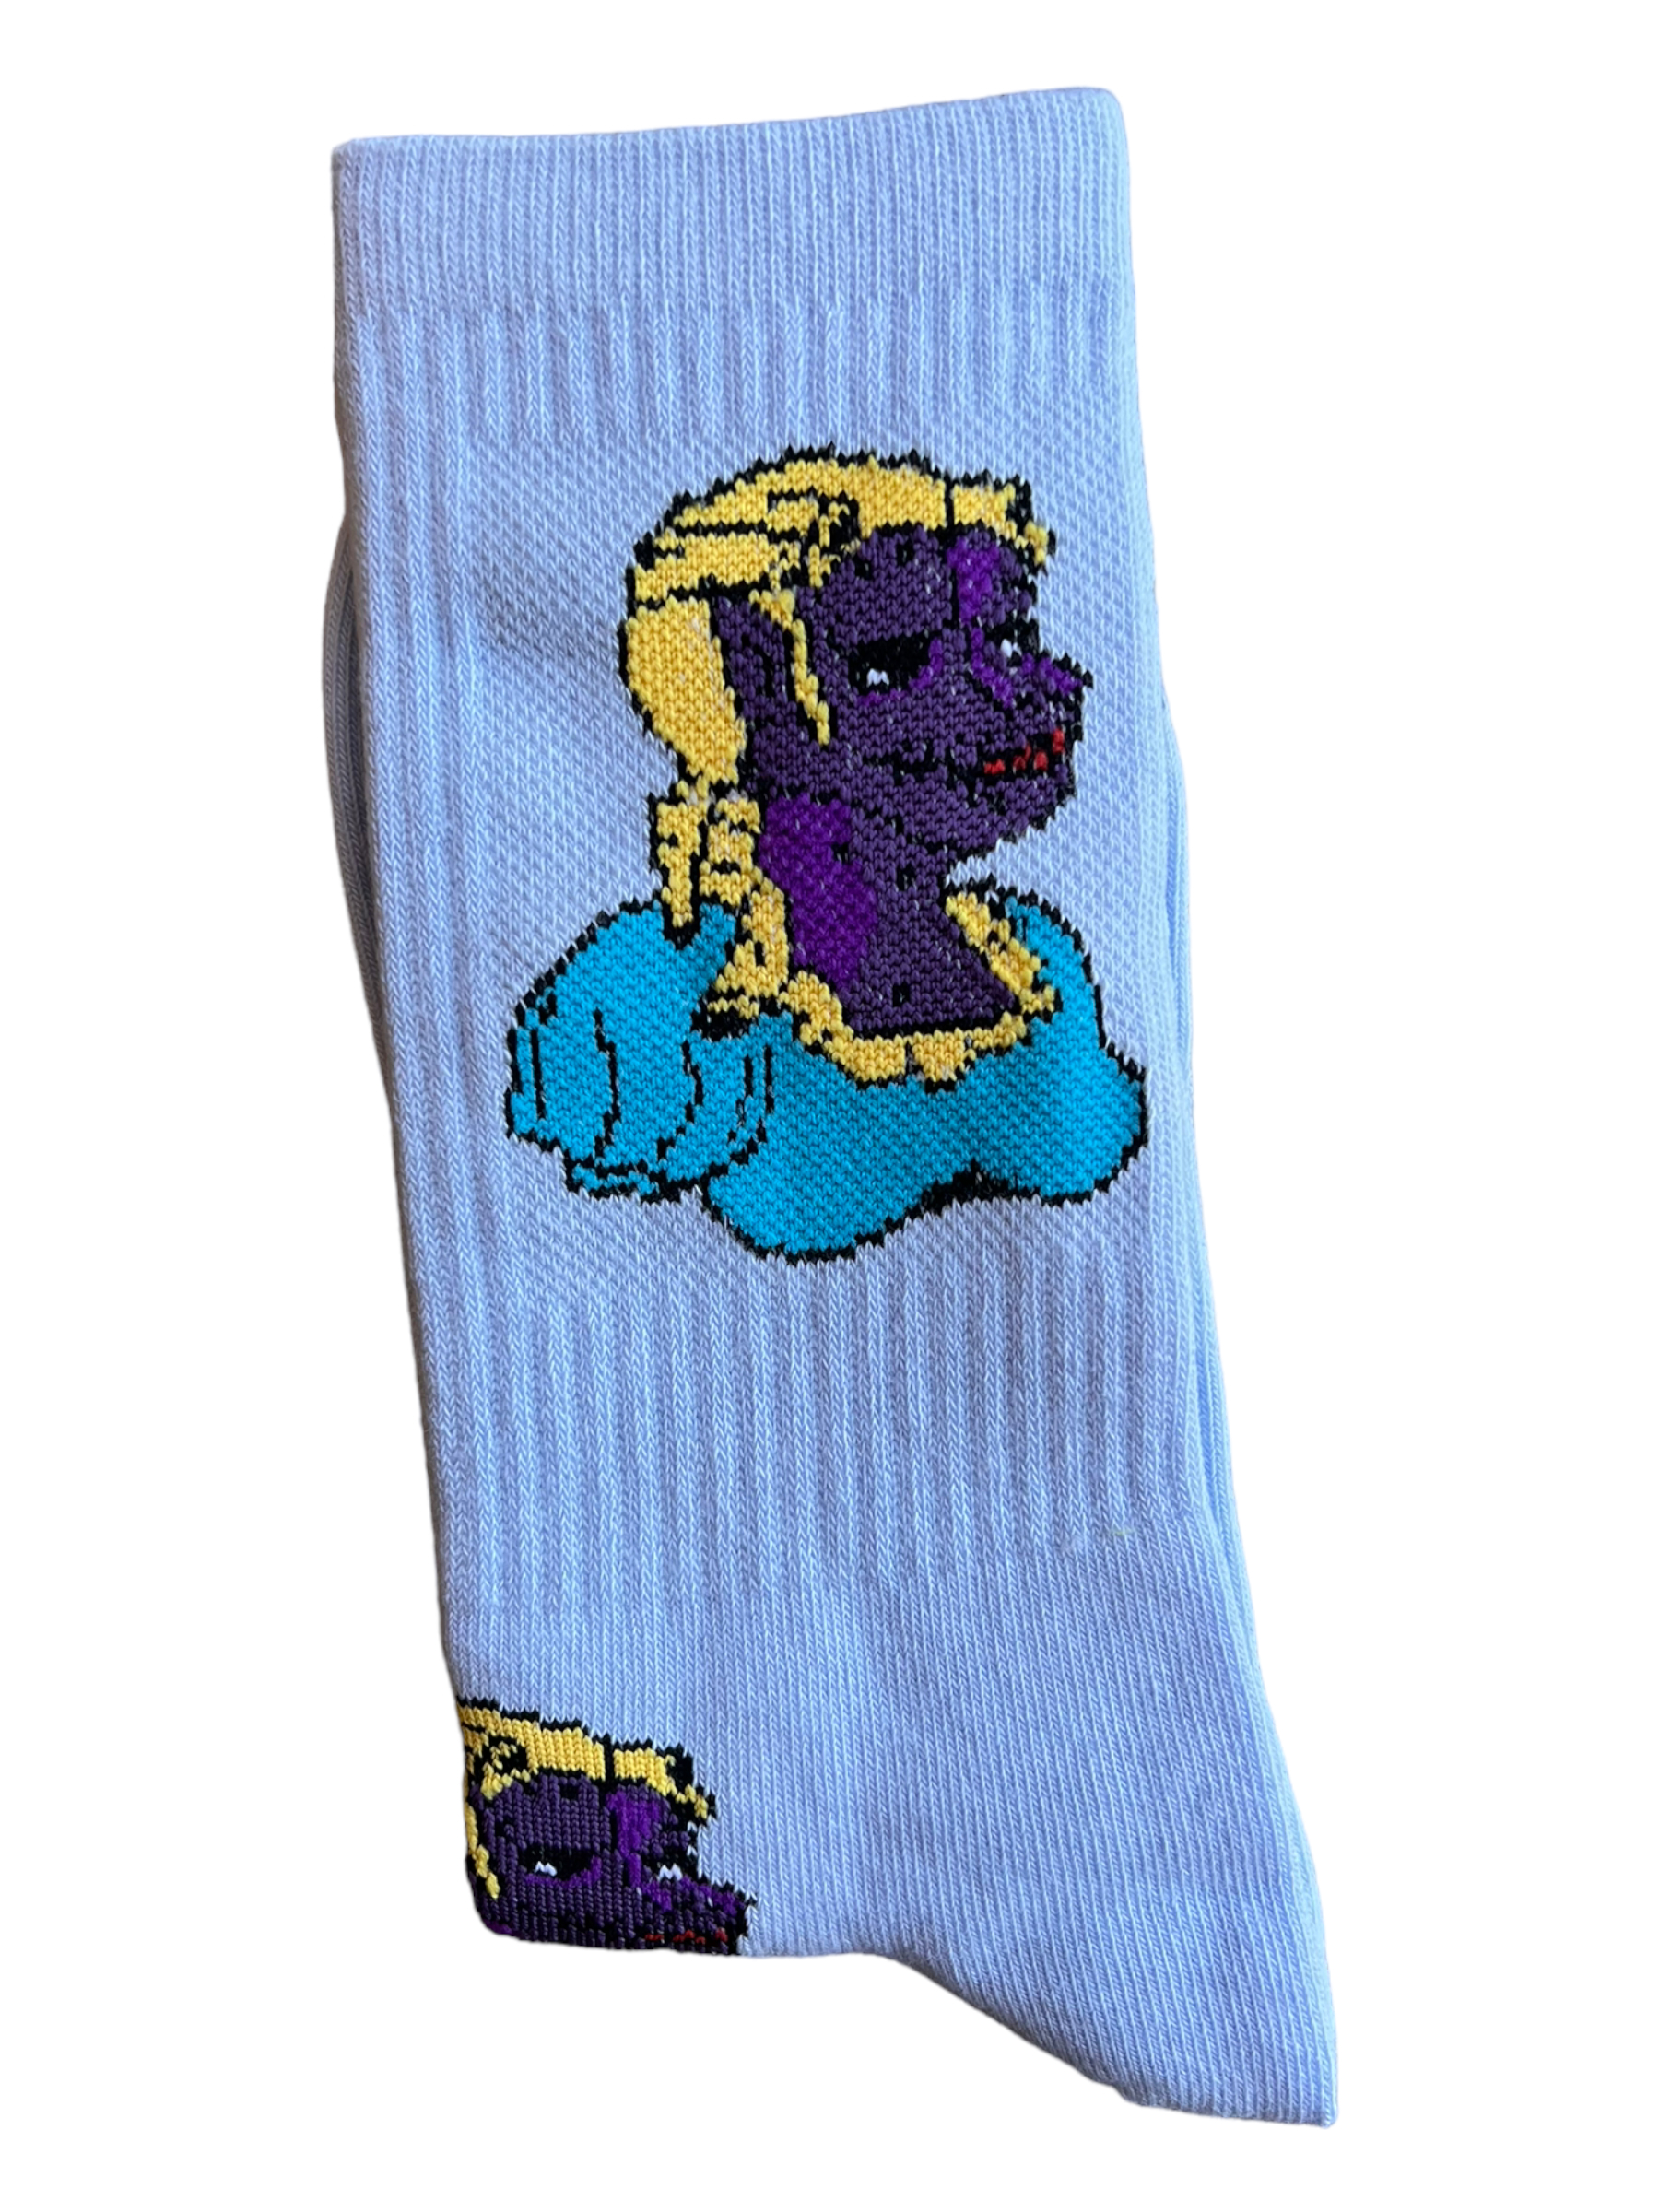 Monster Feet Socks, Fun Socks, Ugly Feet, The Real Shirt Plug ™